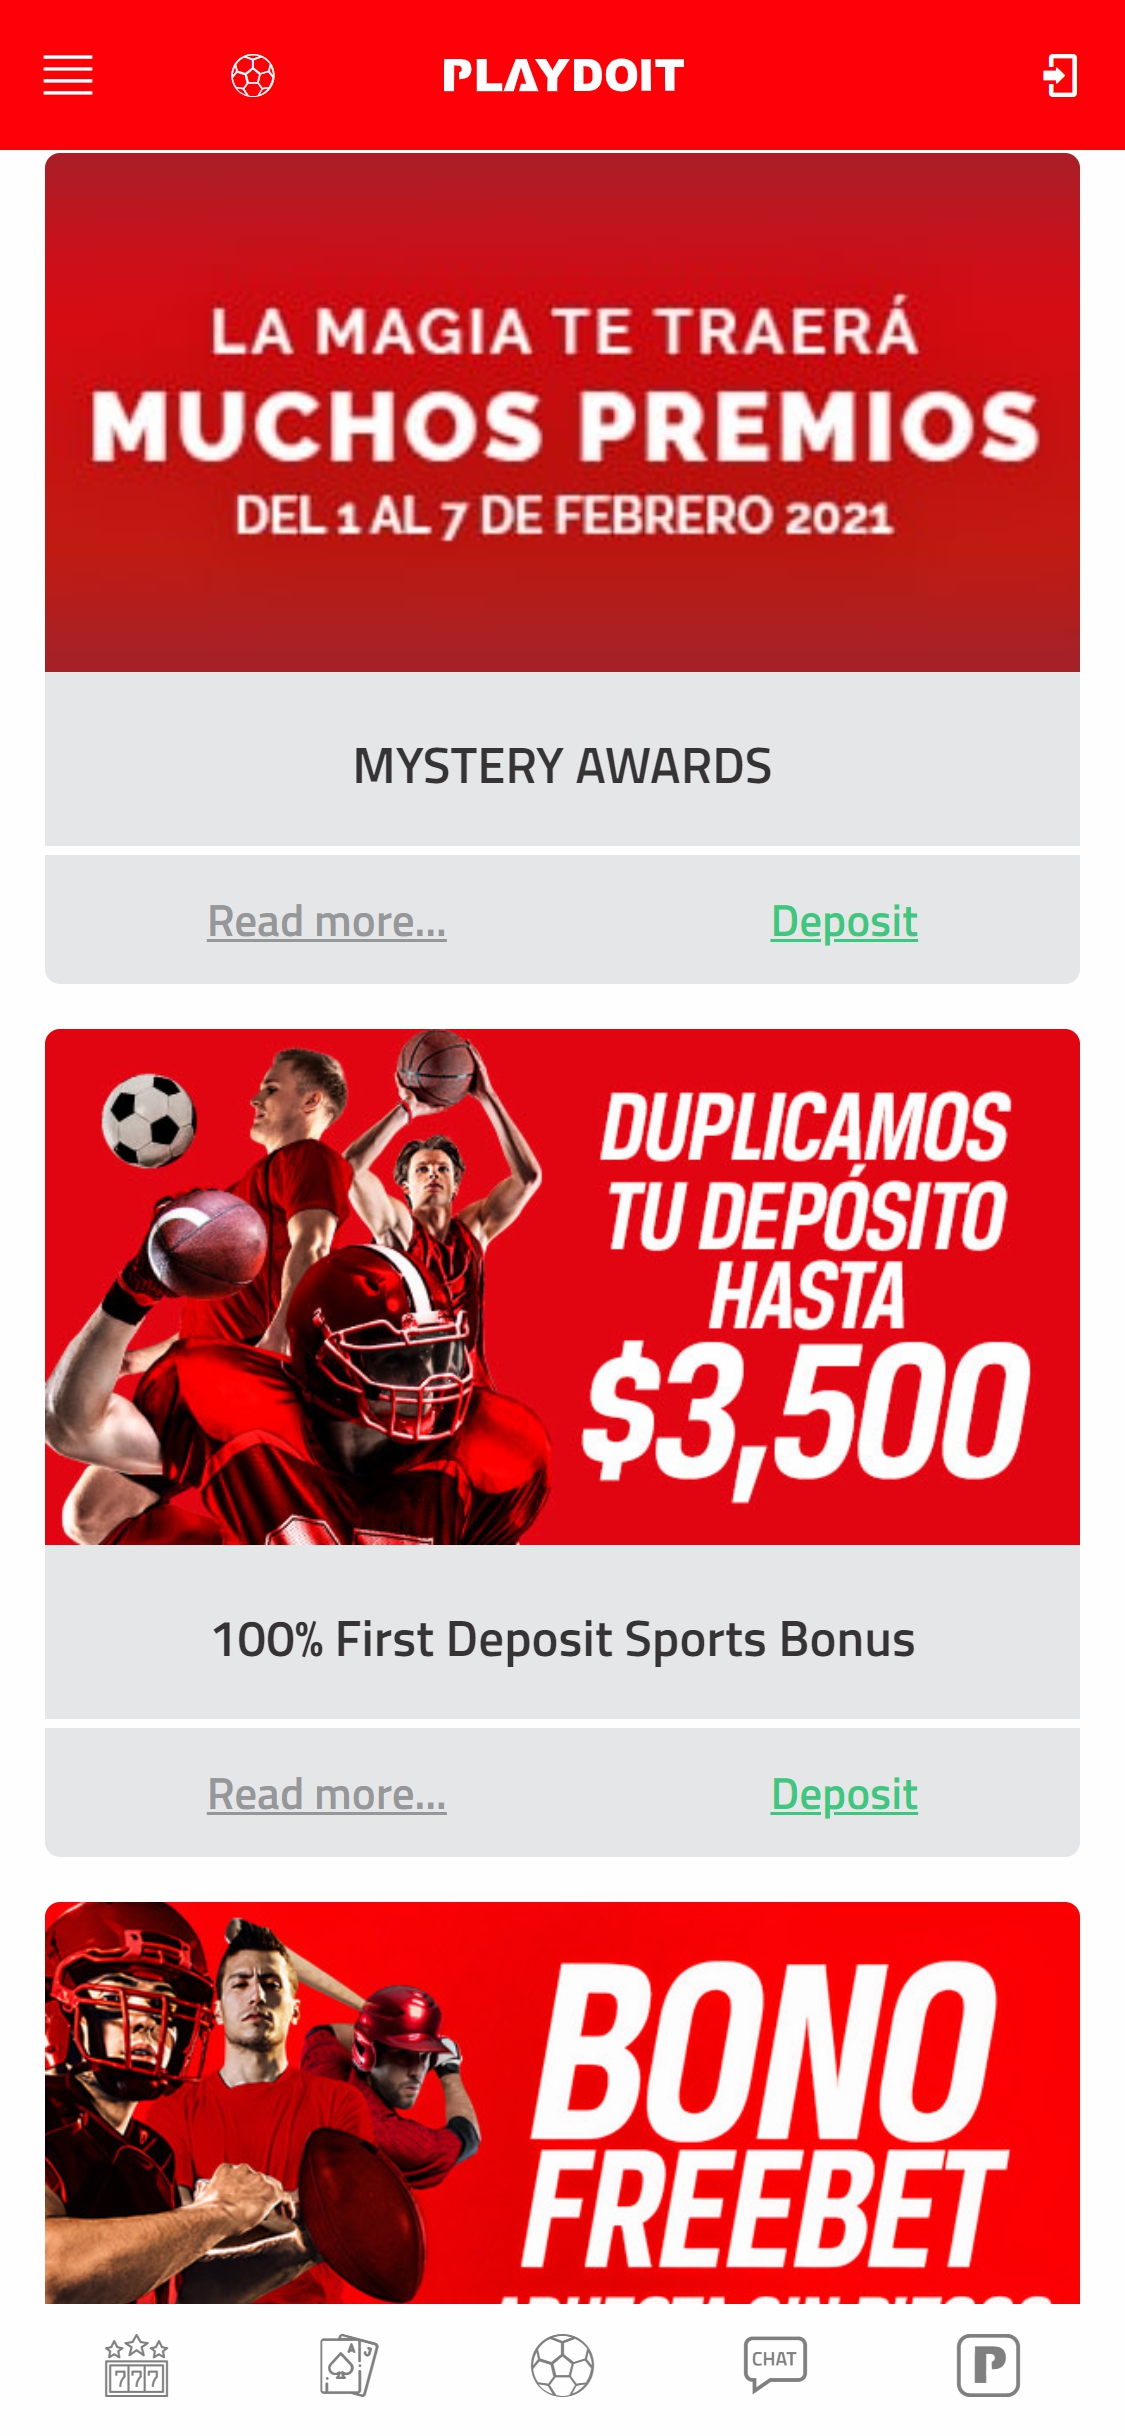 Play Do It Casino Mobile No Deposit Bonus Review